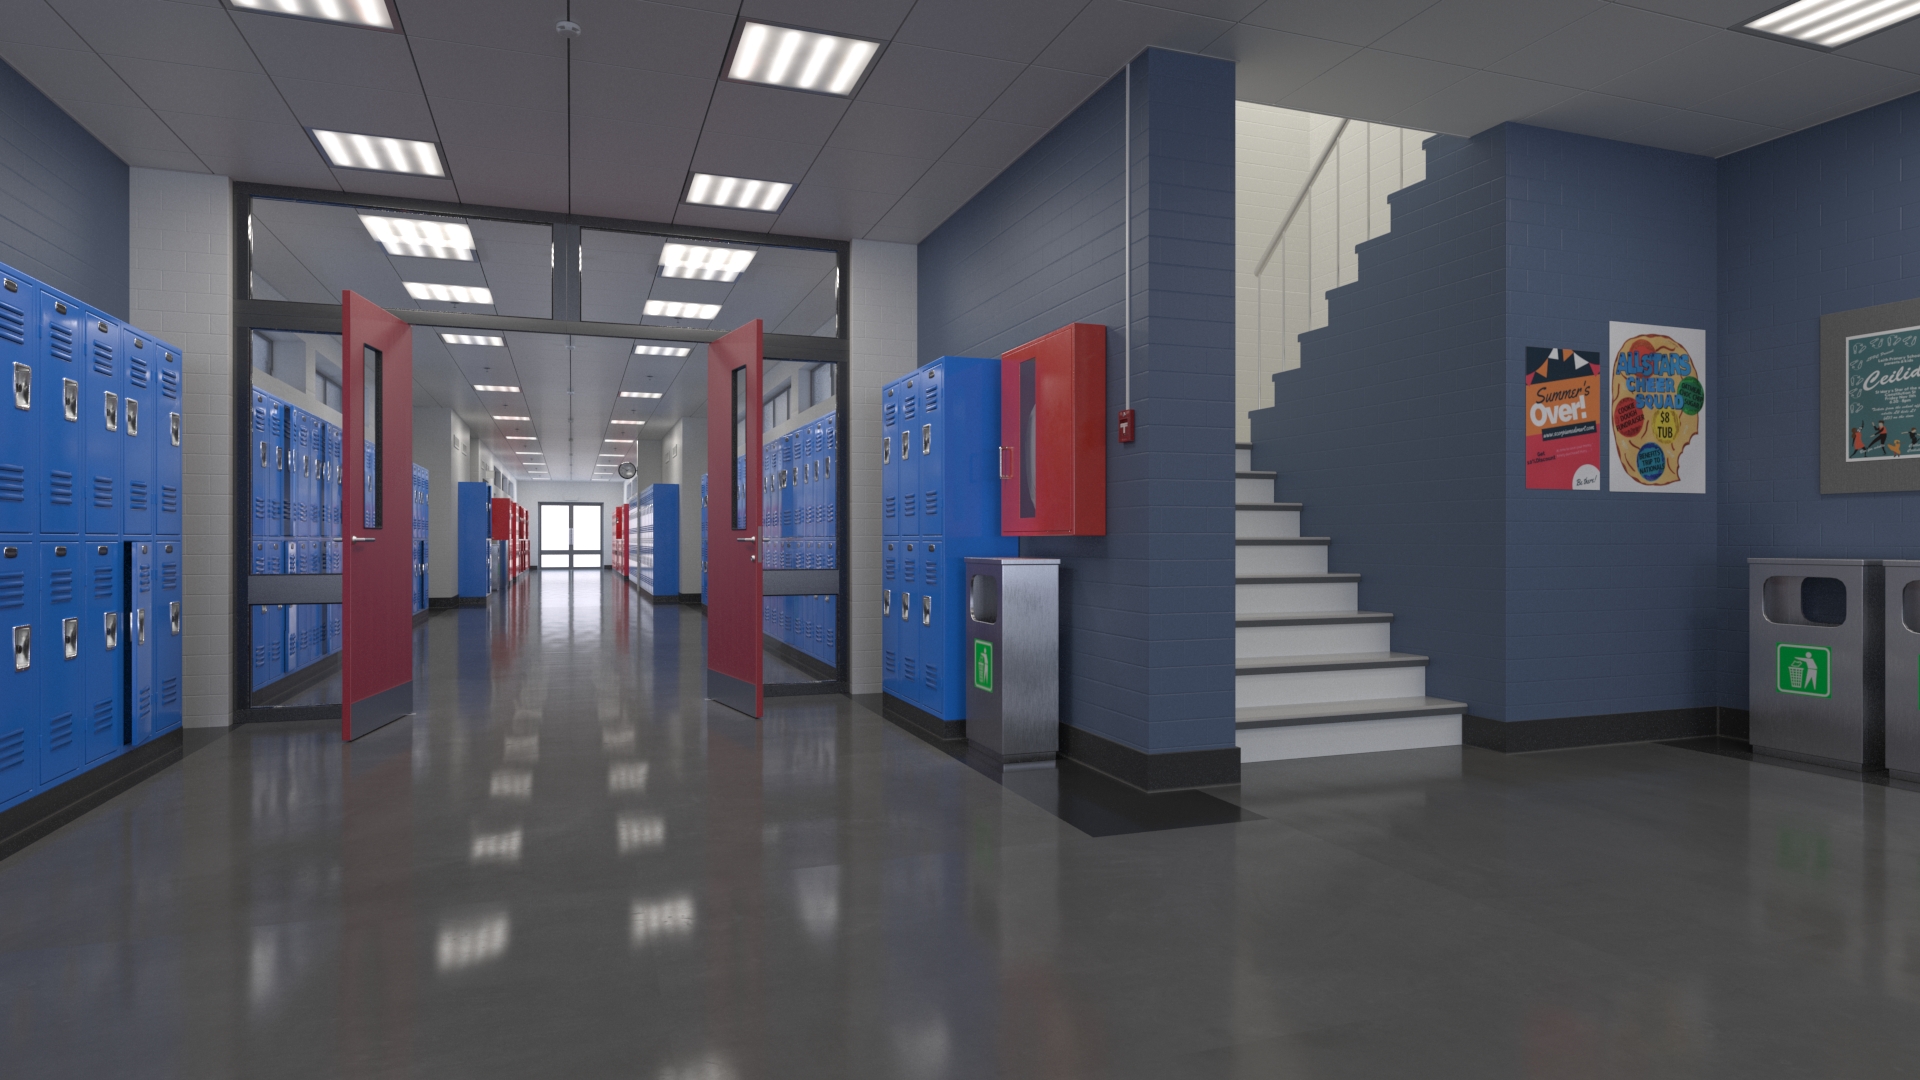 School Hallway 3D Model $199 - .max .fbx .obj